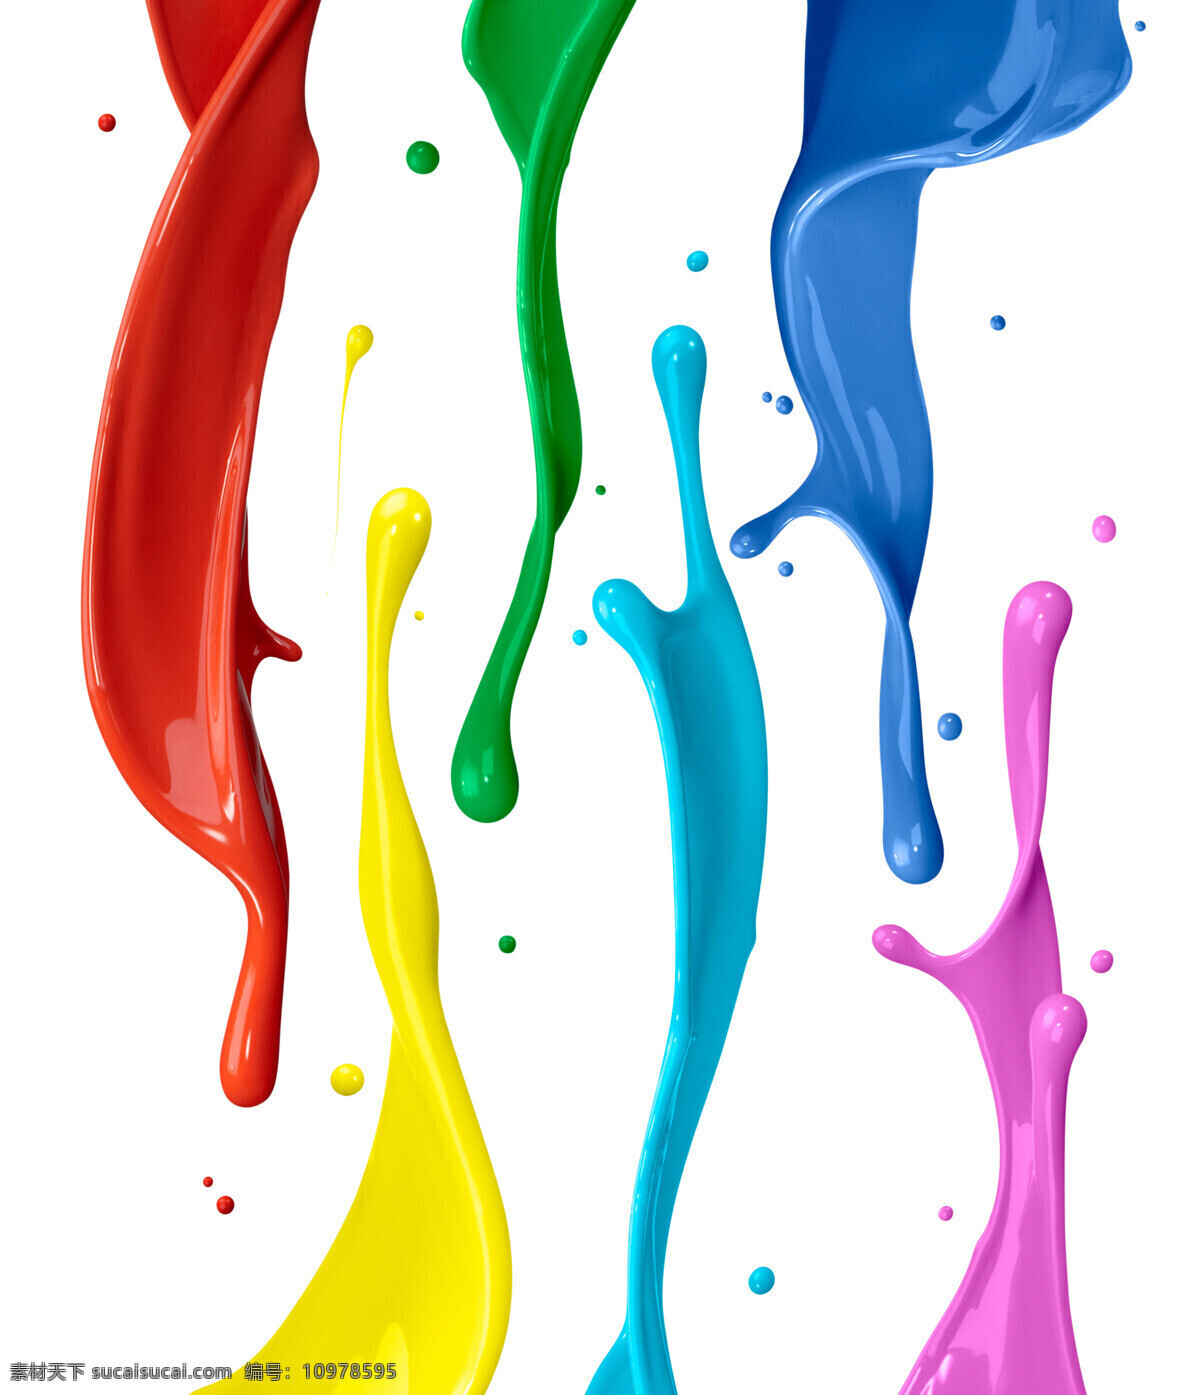 彩色油漆 油漆 喷溅 高清图片 液体 涂料 生活百科